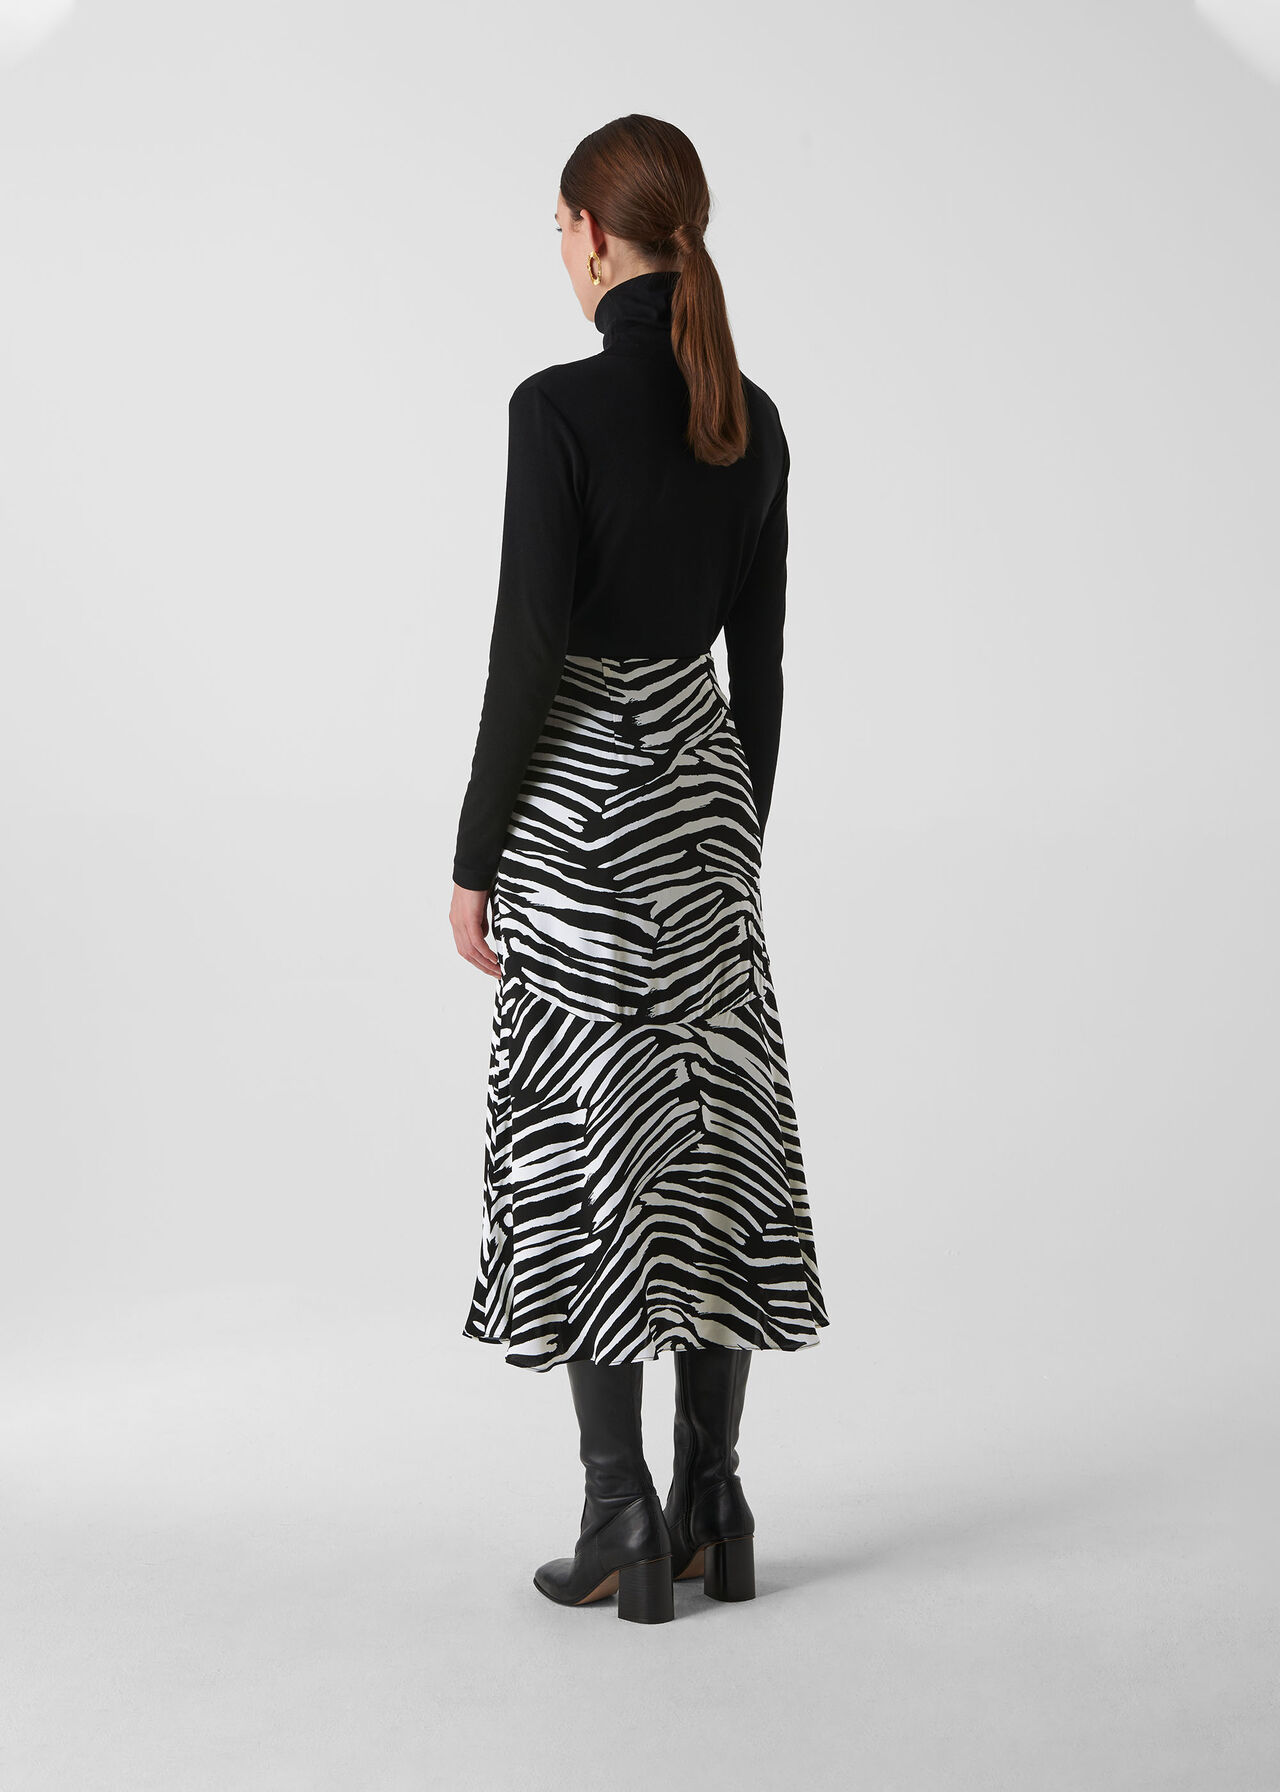 Zebra Print Skirt Black and White